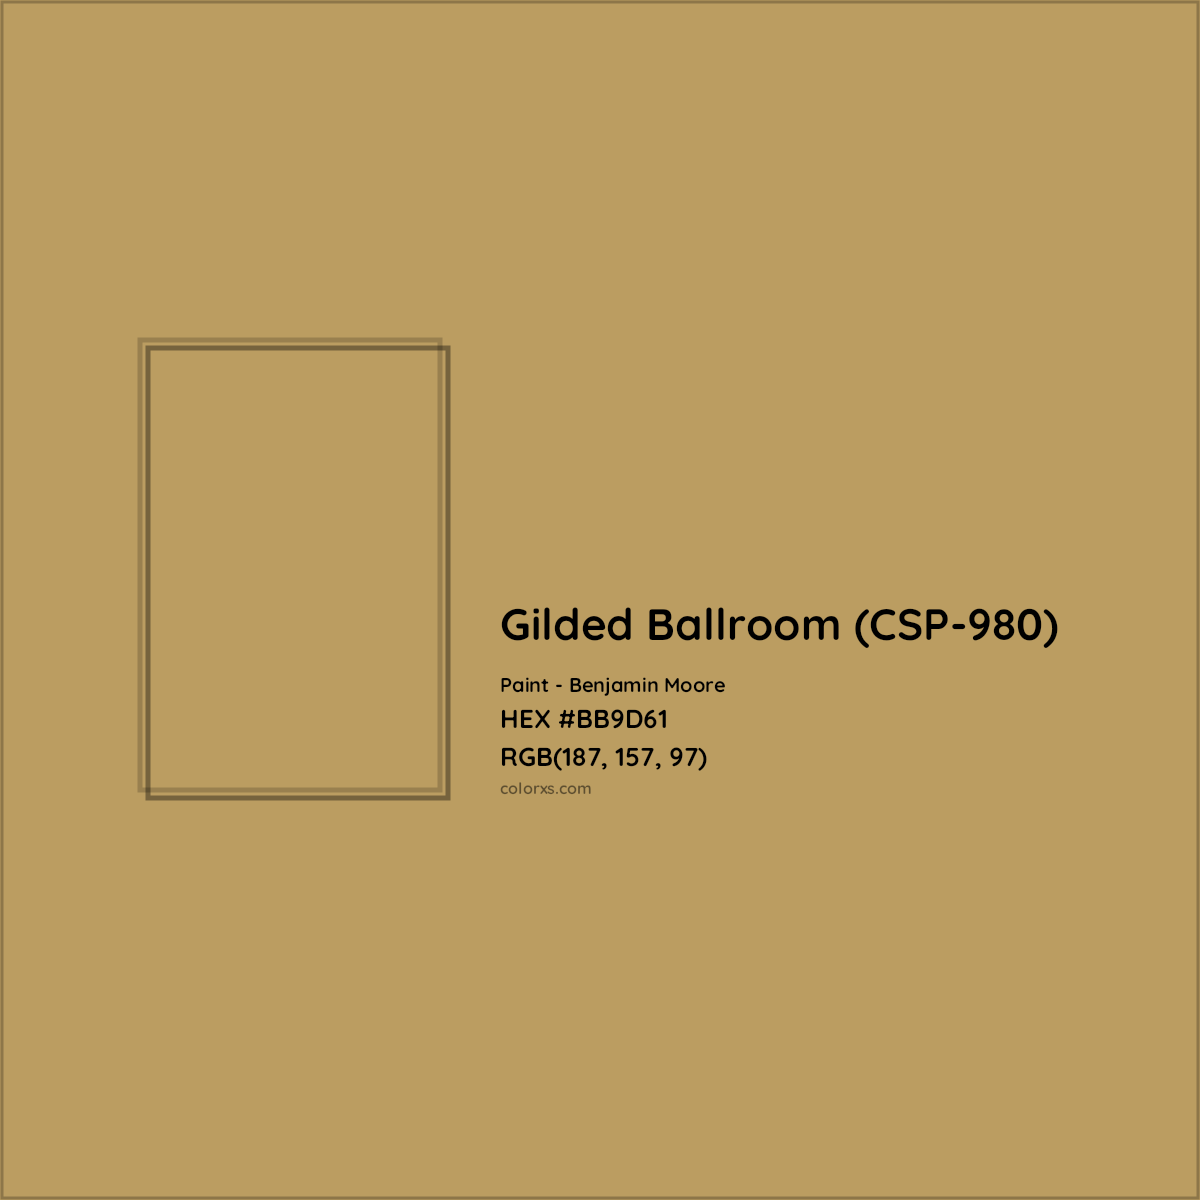 HEX #BB9D61 Gilded Ballroom (CSP-980) Paint Benjamin Moore - Color Code